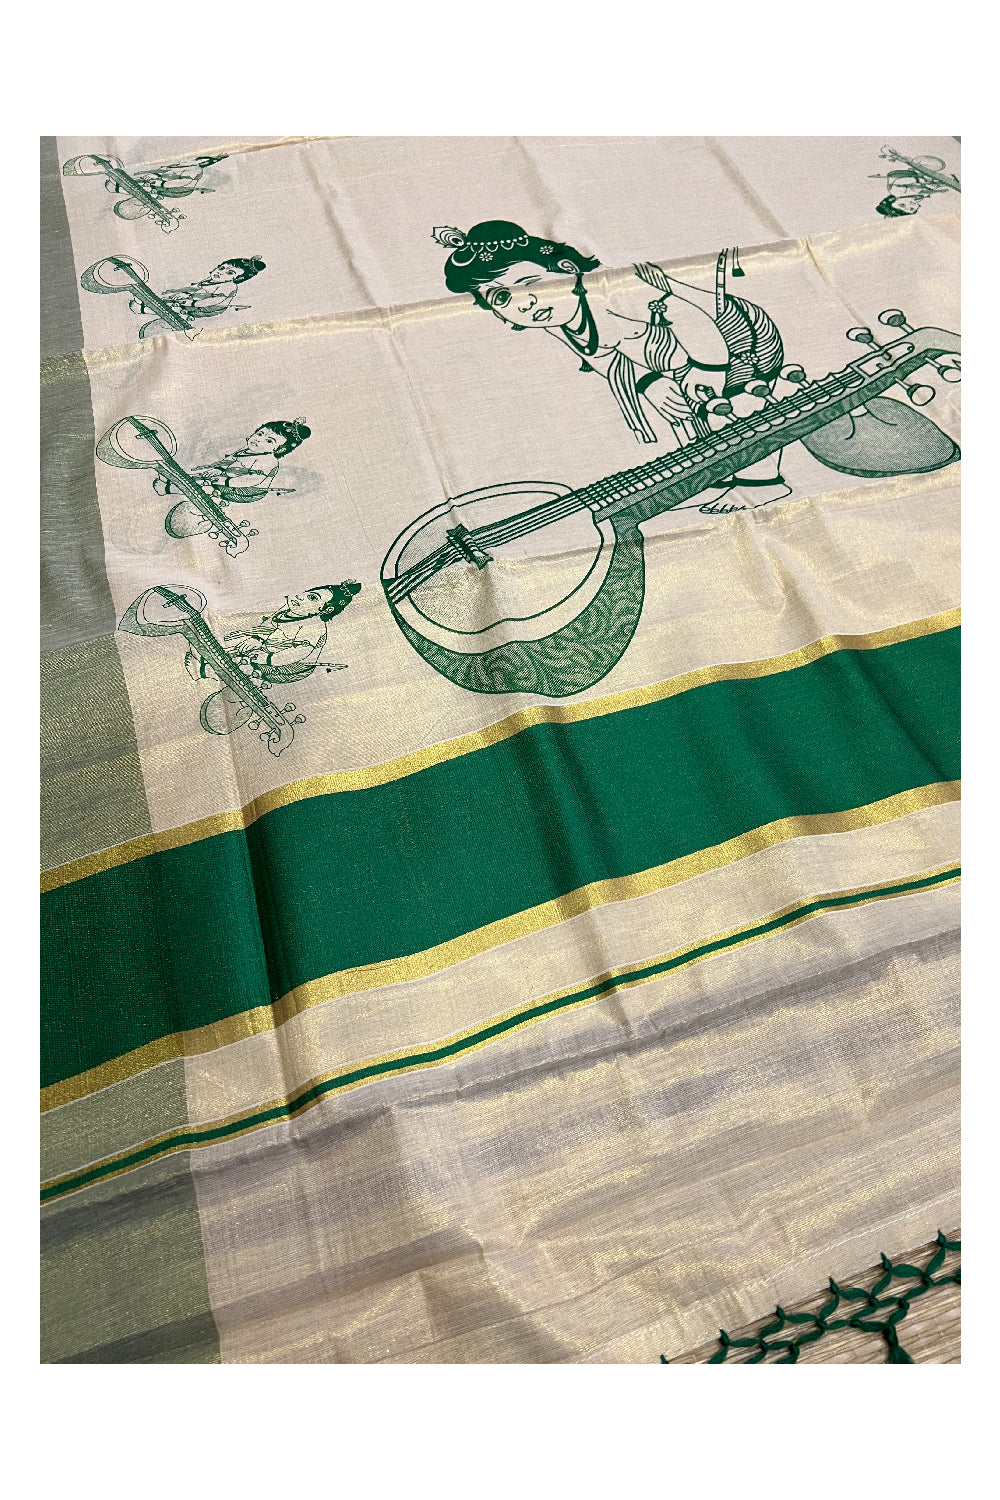 Kerala Tissue Kasavu Mural Printed Saree with Baby Krishna Design and Green Border